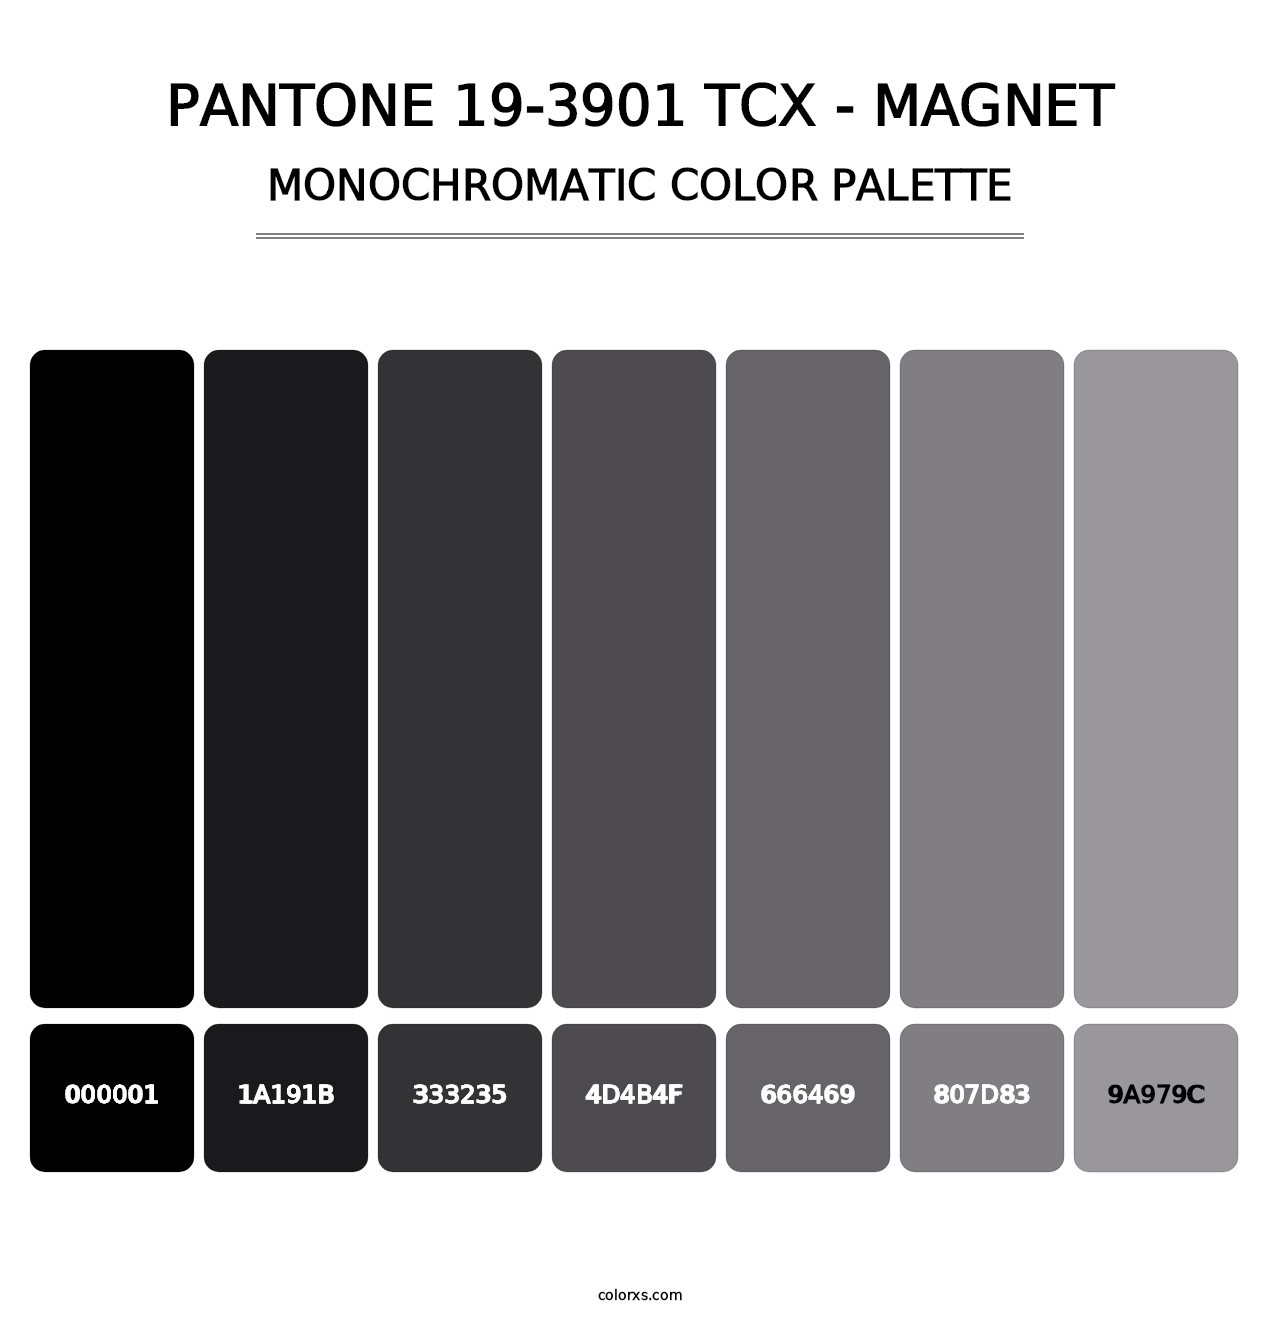 PANTONE 19-3901 TCX - Magnet - Monochromatic Color Palette